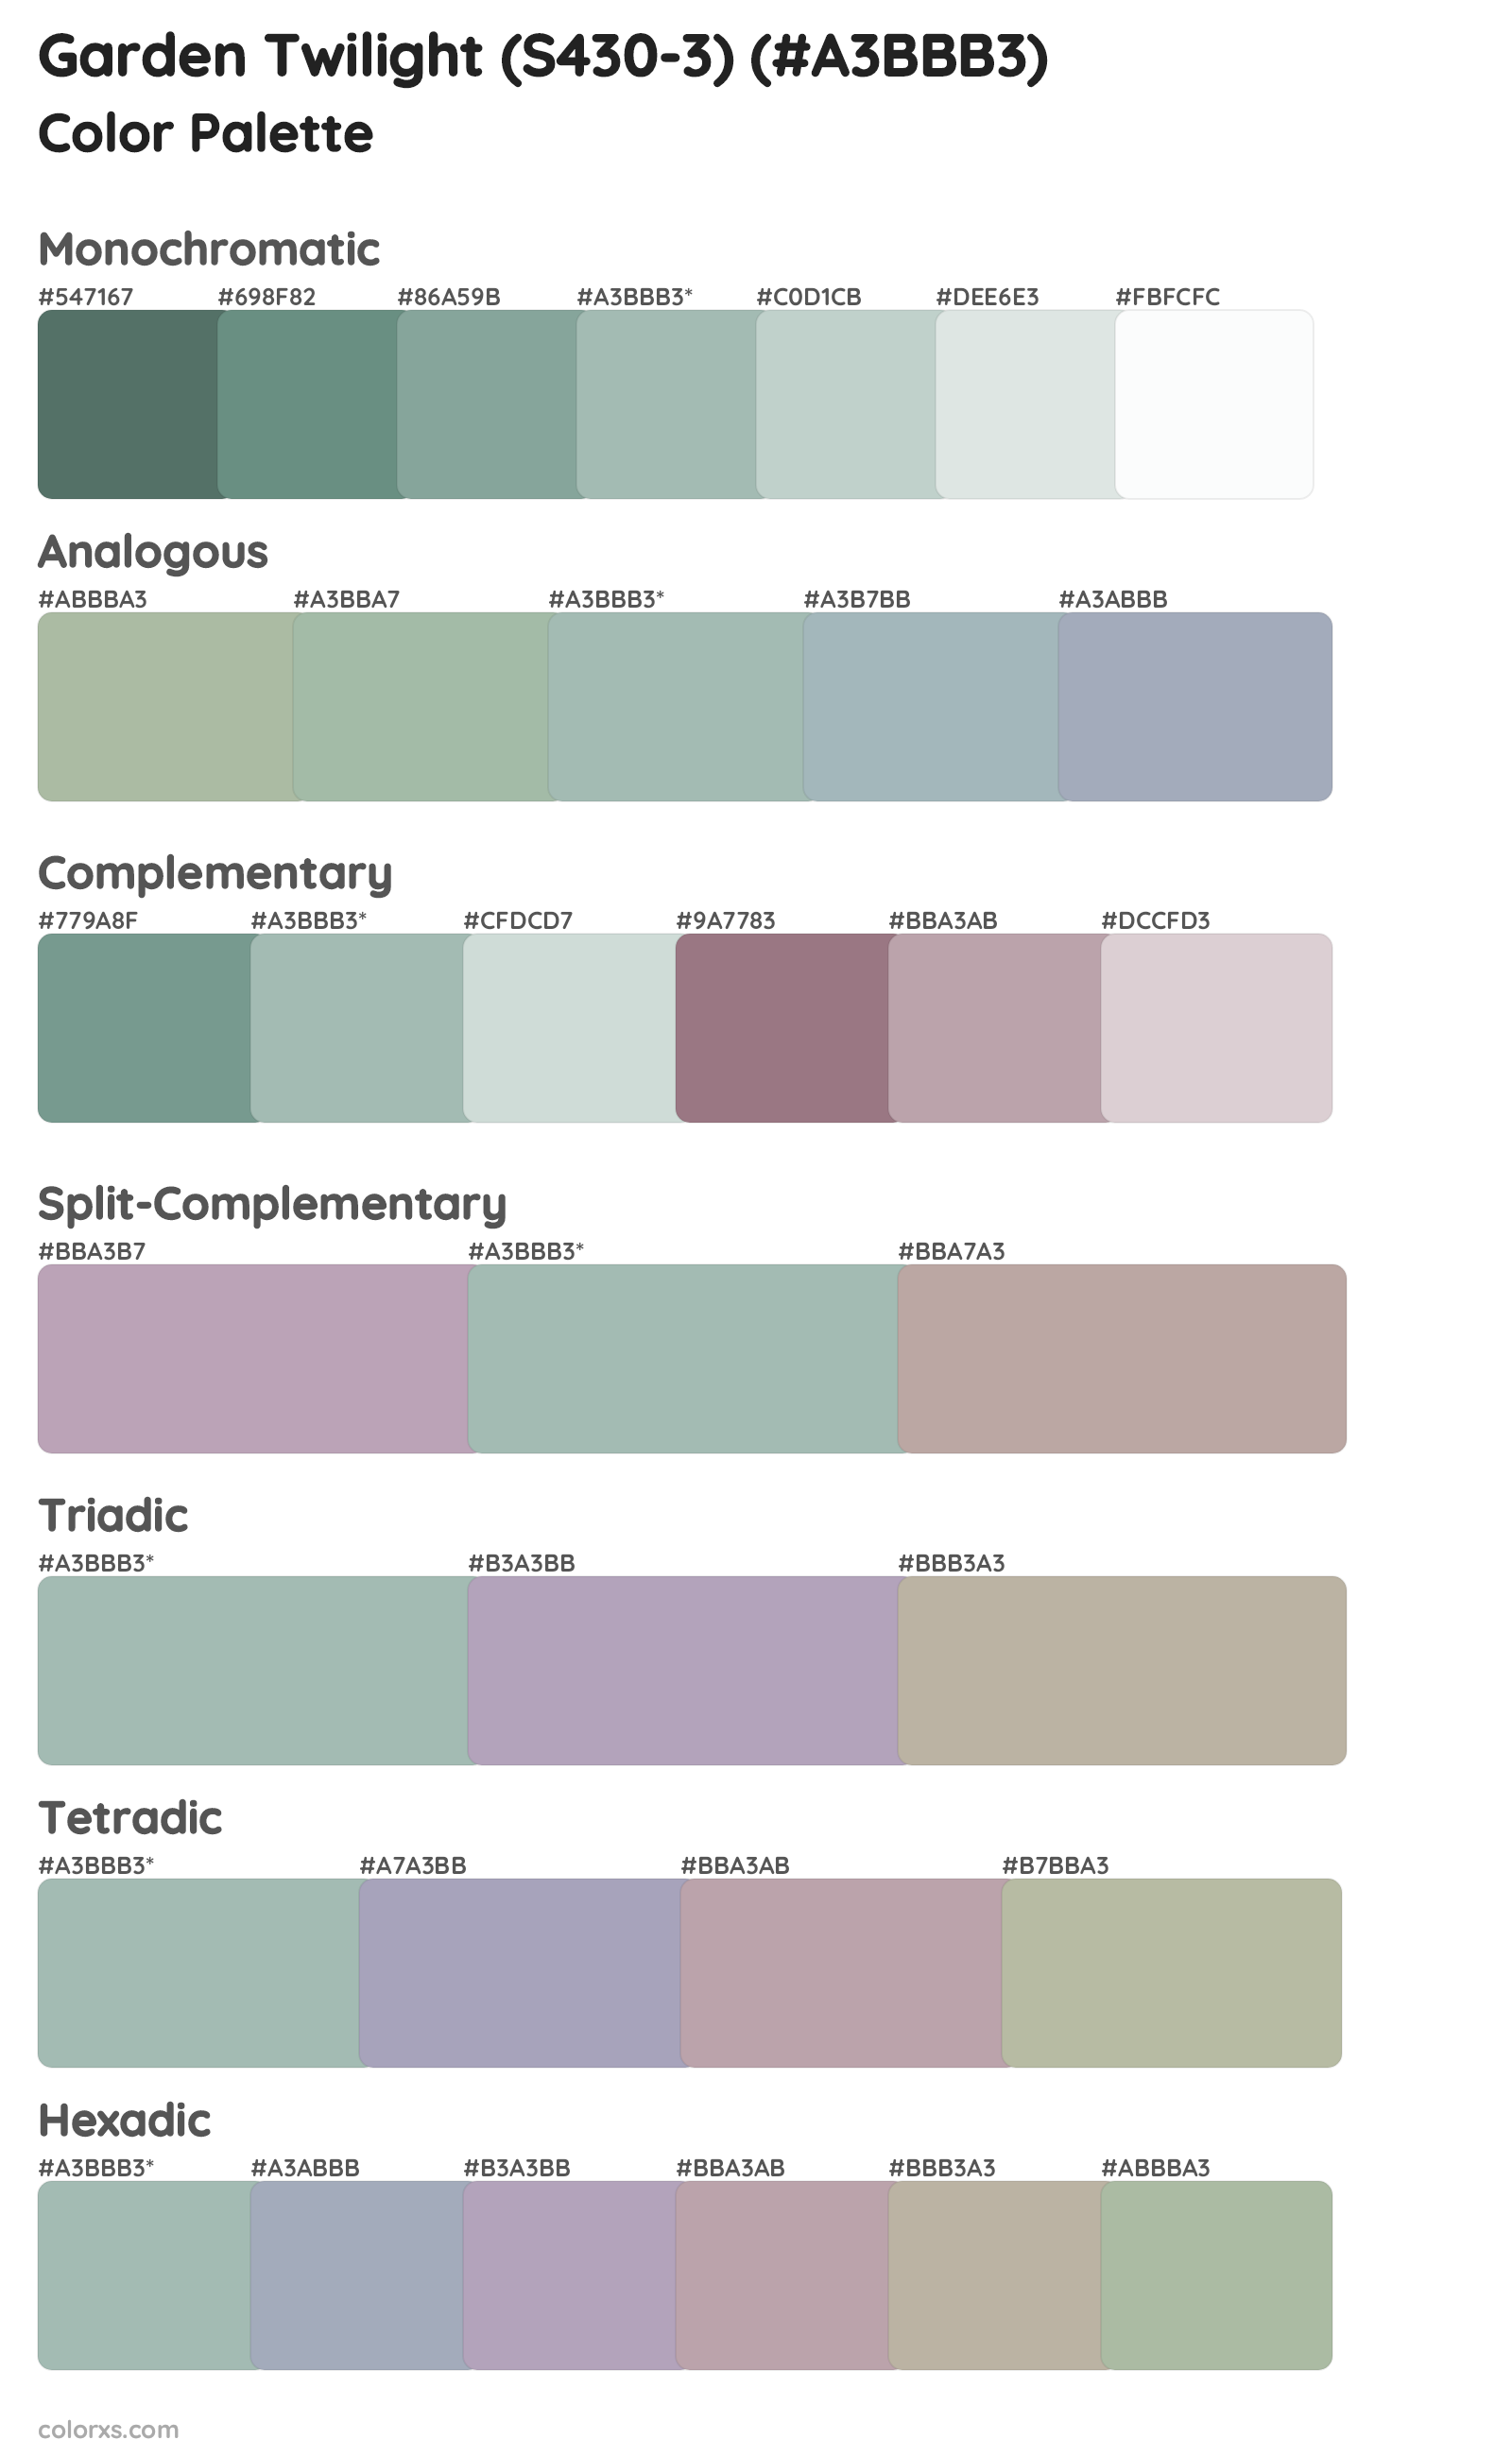 Garden Twilight (S430-3) Color Scheme Palettes